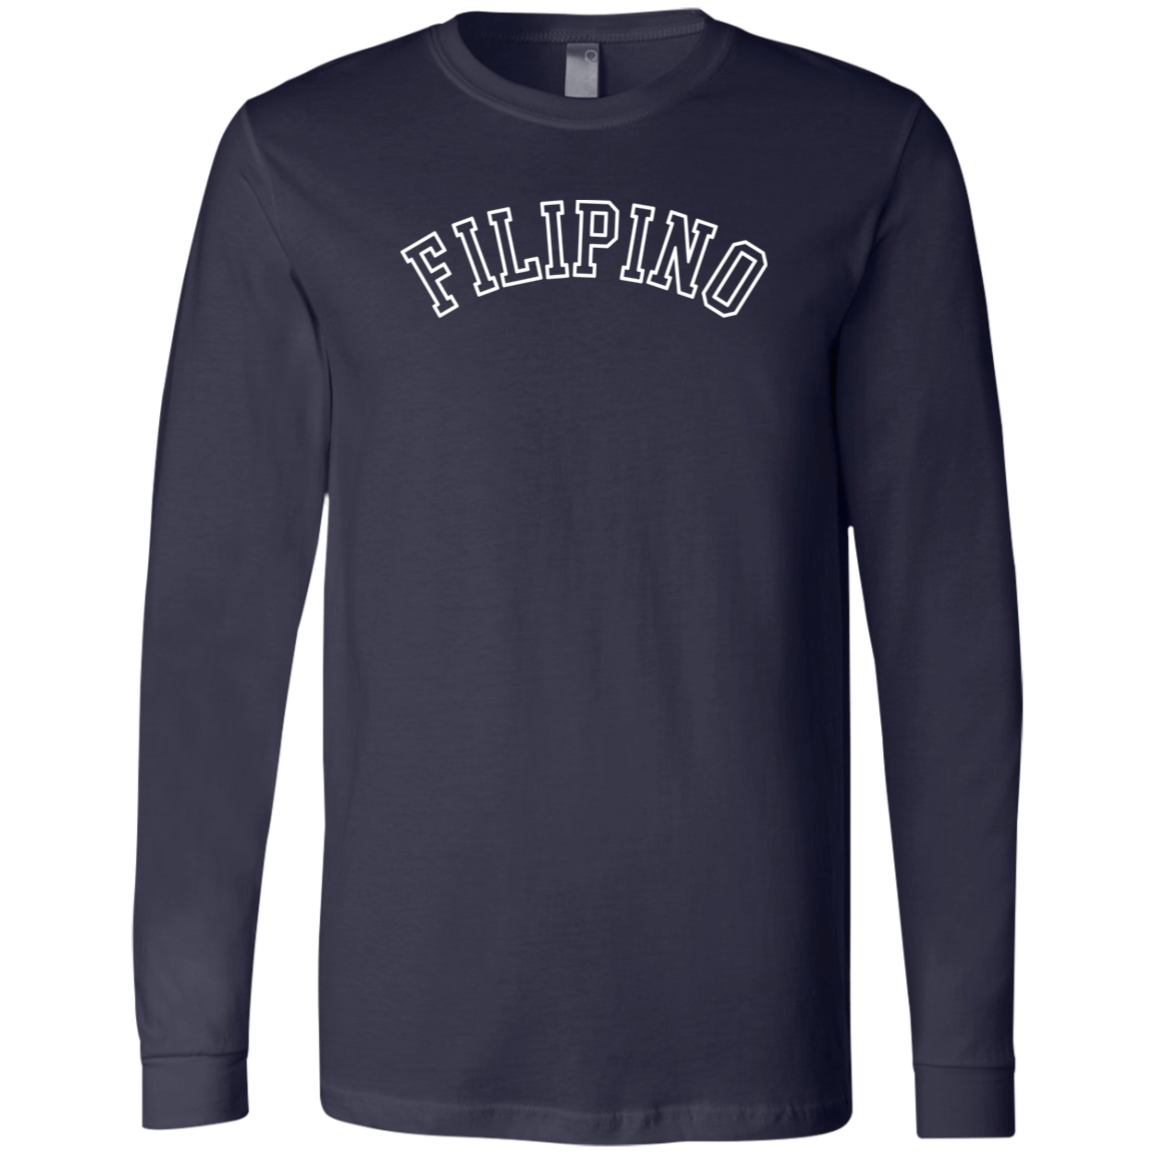 Filipino CB Unisex Jersey Long Sleeve T-Shirt